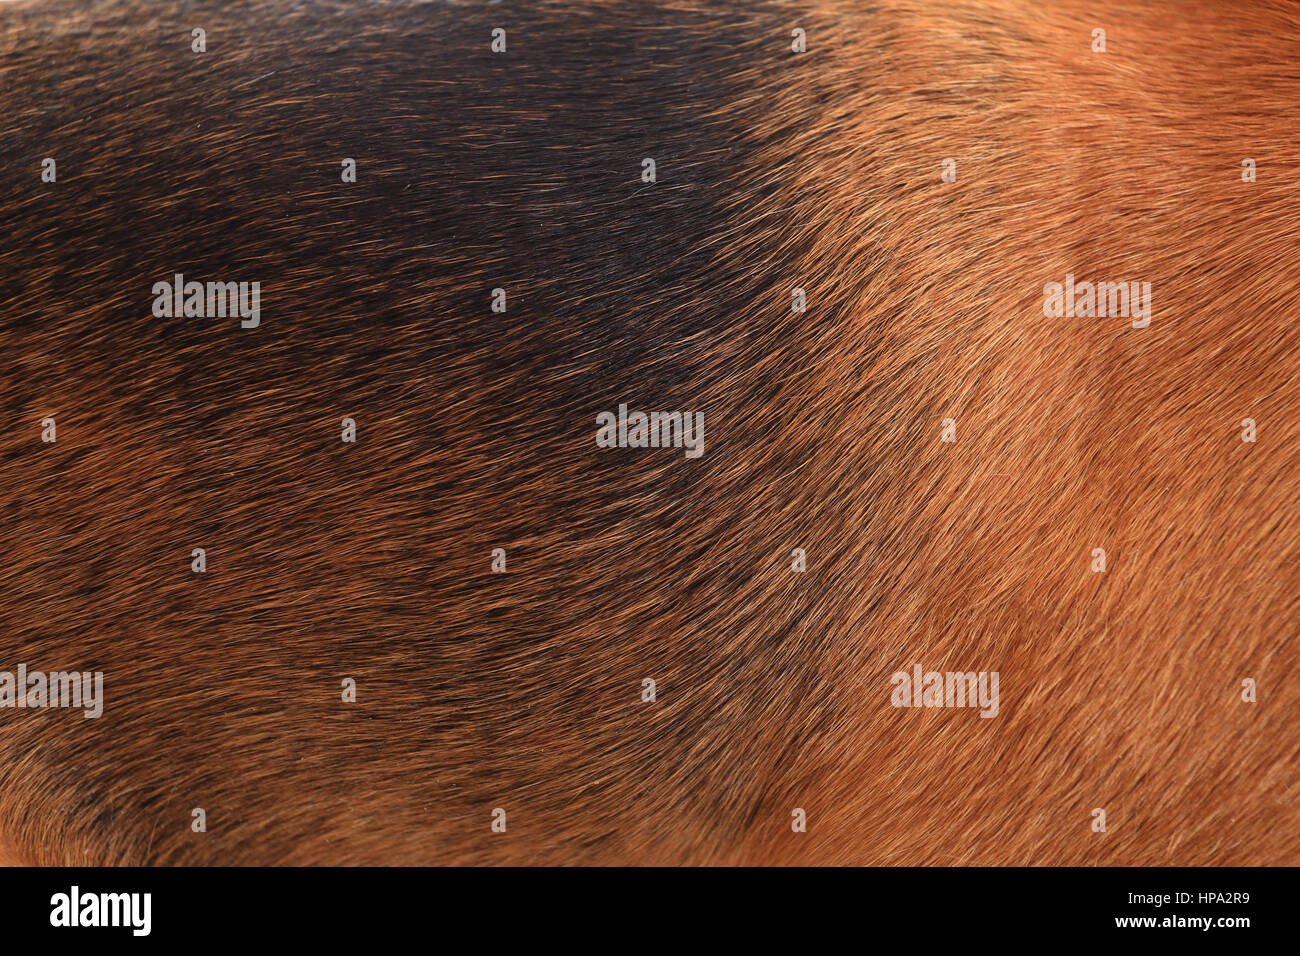 Brauner Hund Wolle hautnah. Schwarze und braune Beagle wolle. Textur von brauner Wolle. Stockfoto